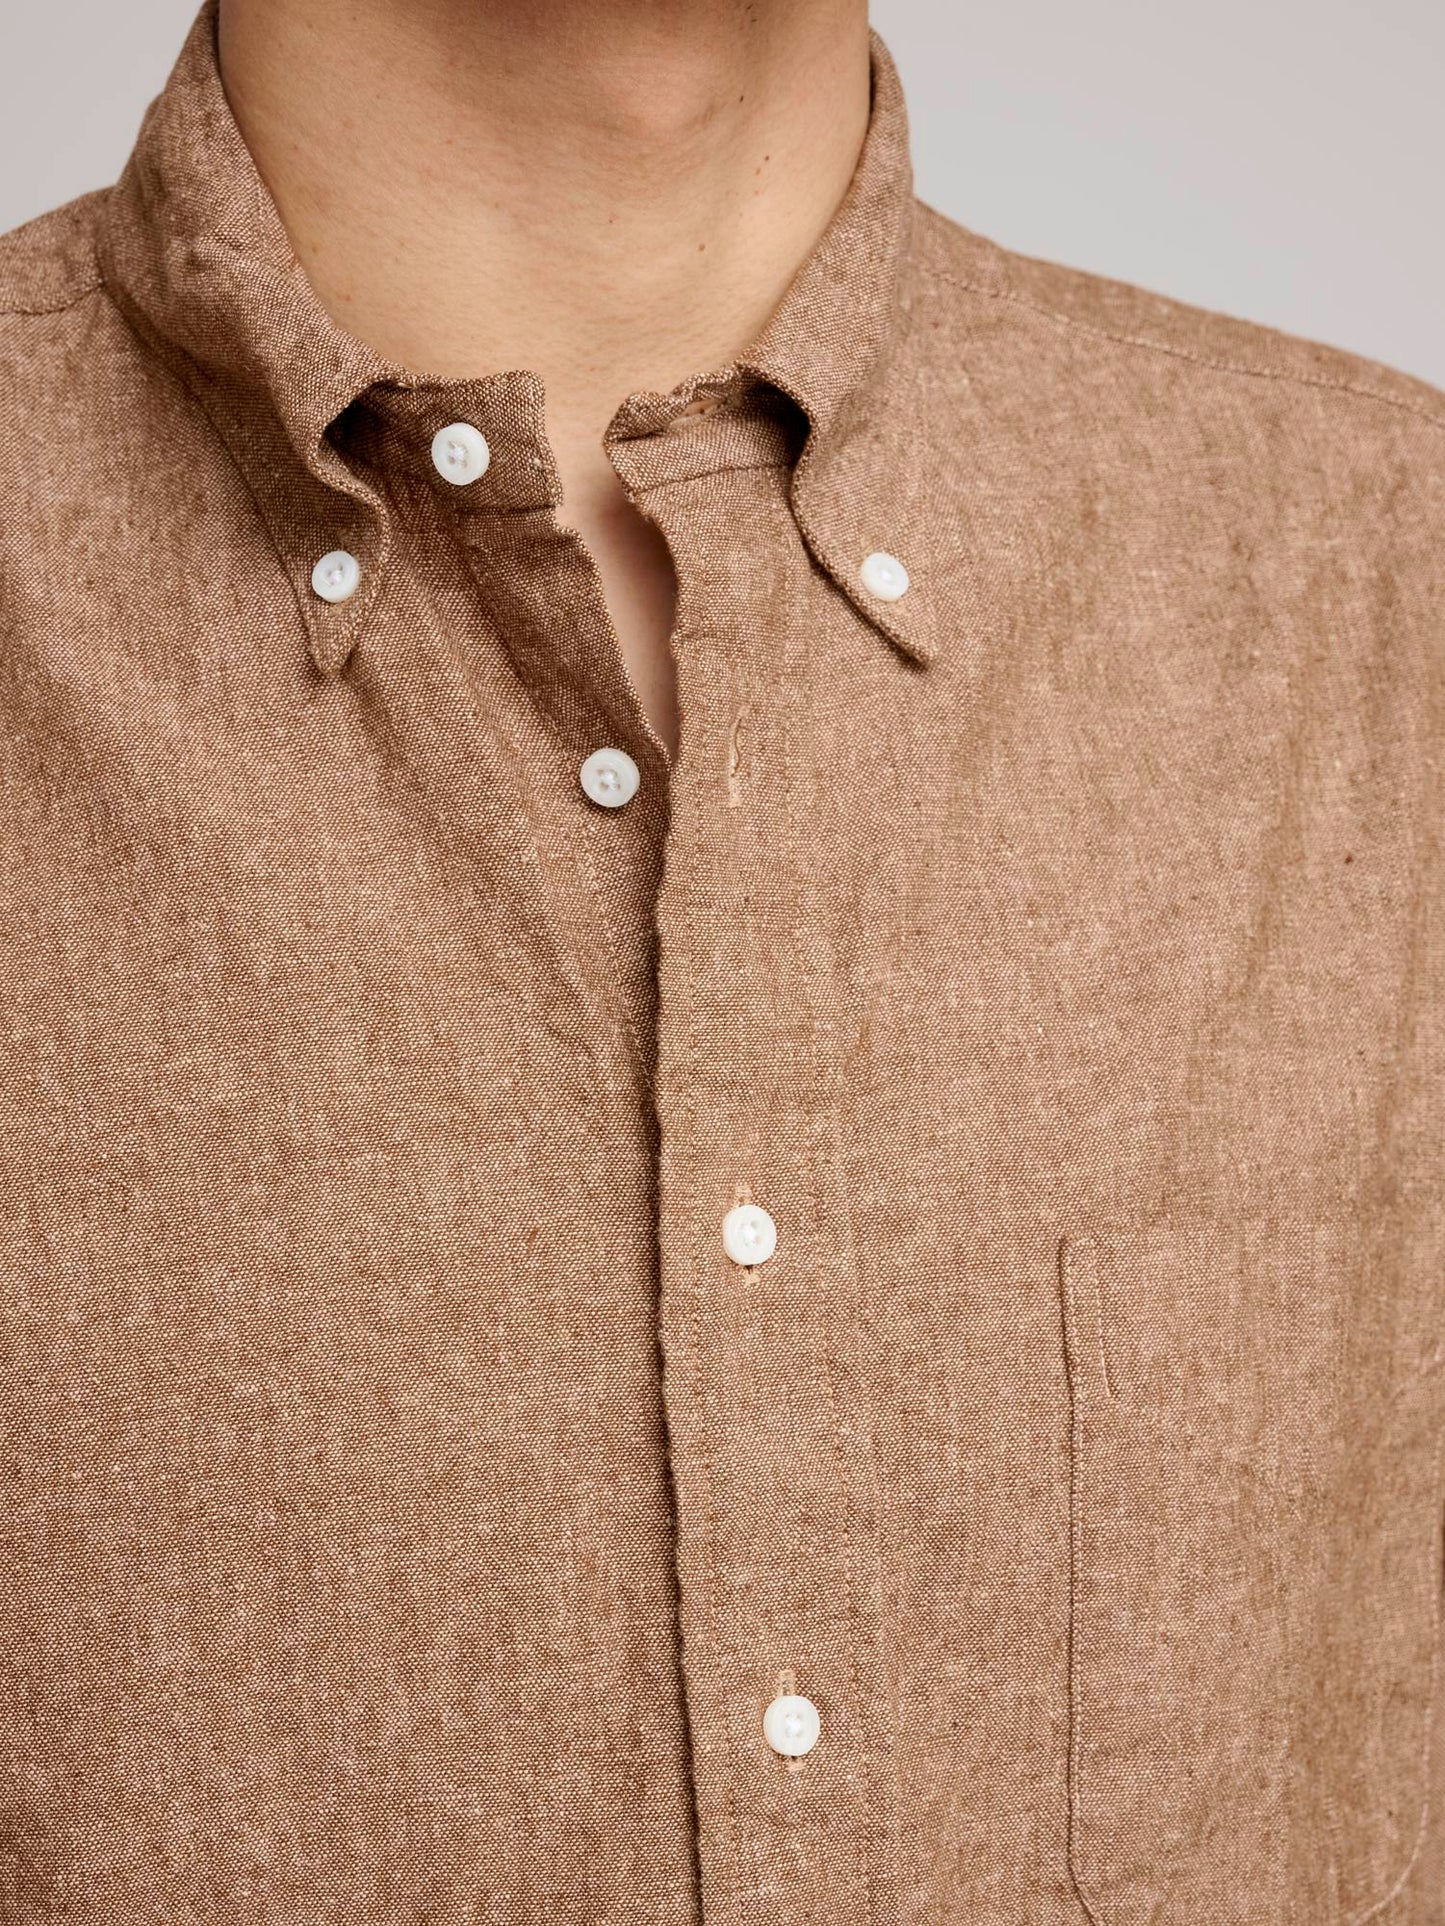 Cotton & Linen Shirt, Brown